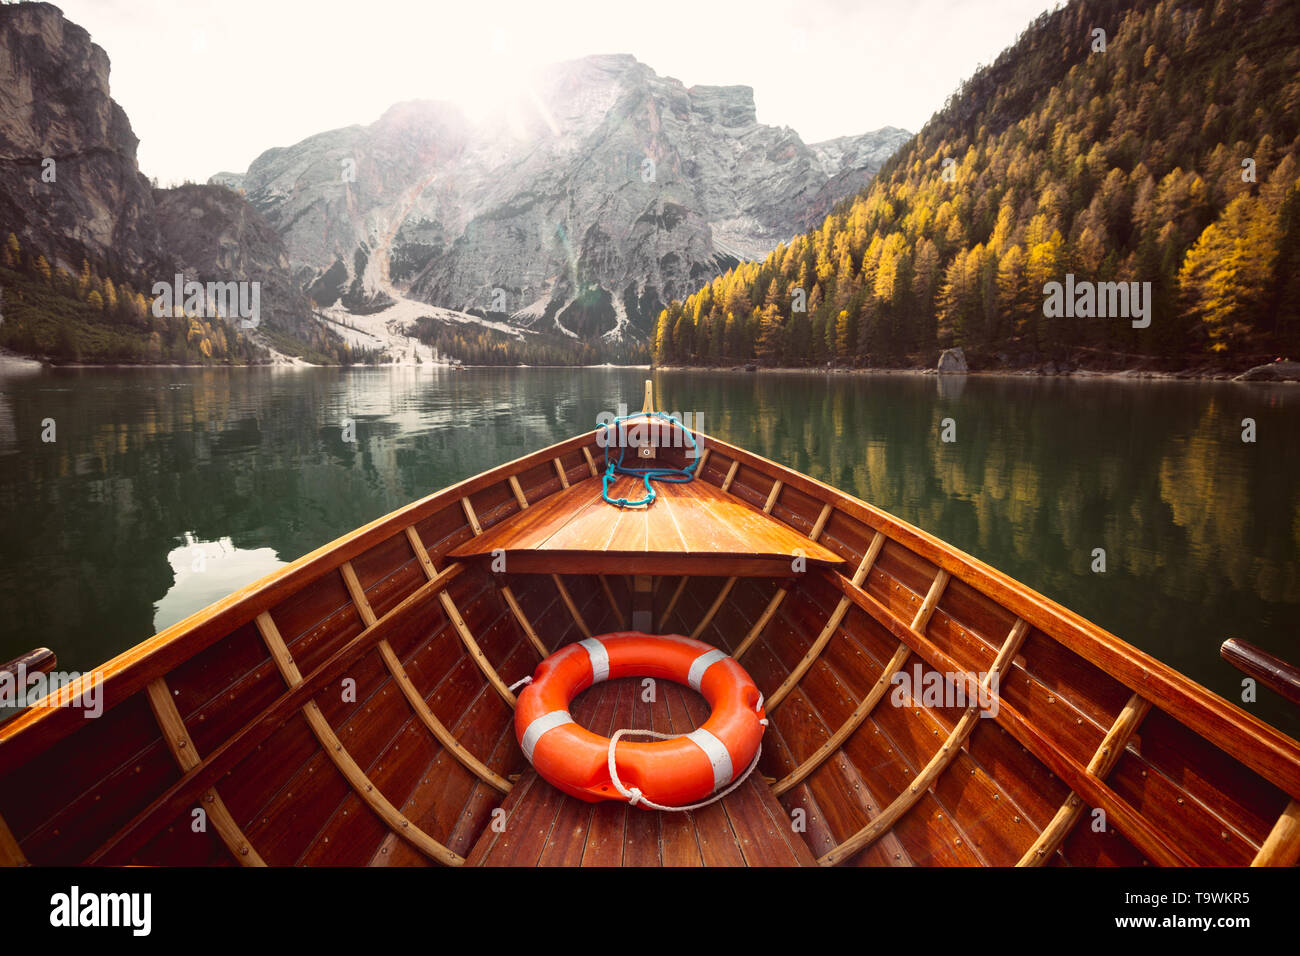 Belle vue de bateau à rames en bois traditionnel sur Scenic Lago di Braies dans les Dolomites dans la pittoresque ville de lumière du matin au lever du soleil, le Tyrol du Sud, Italie Banque D'Images